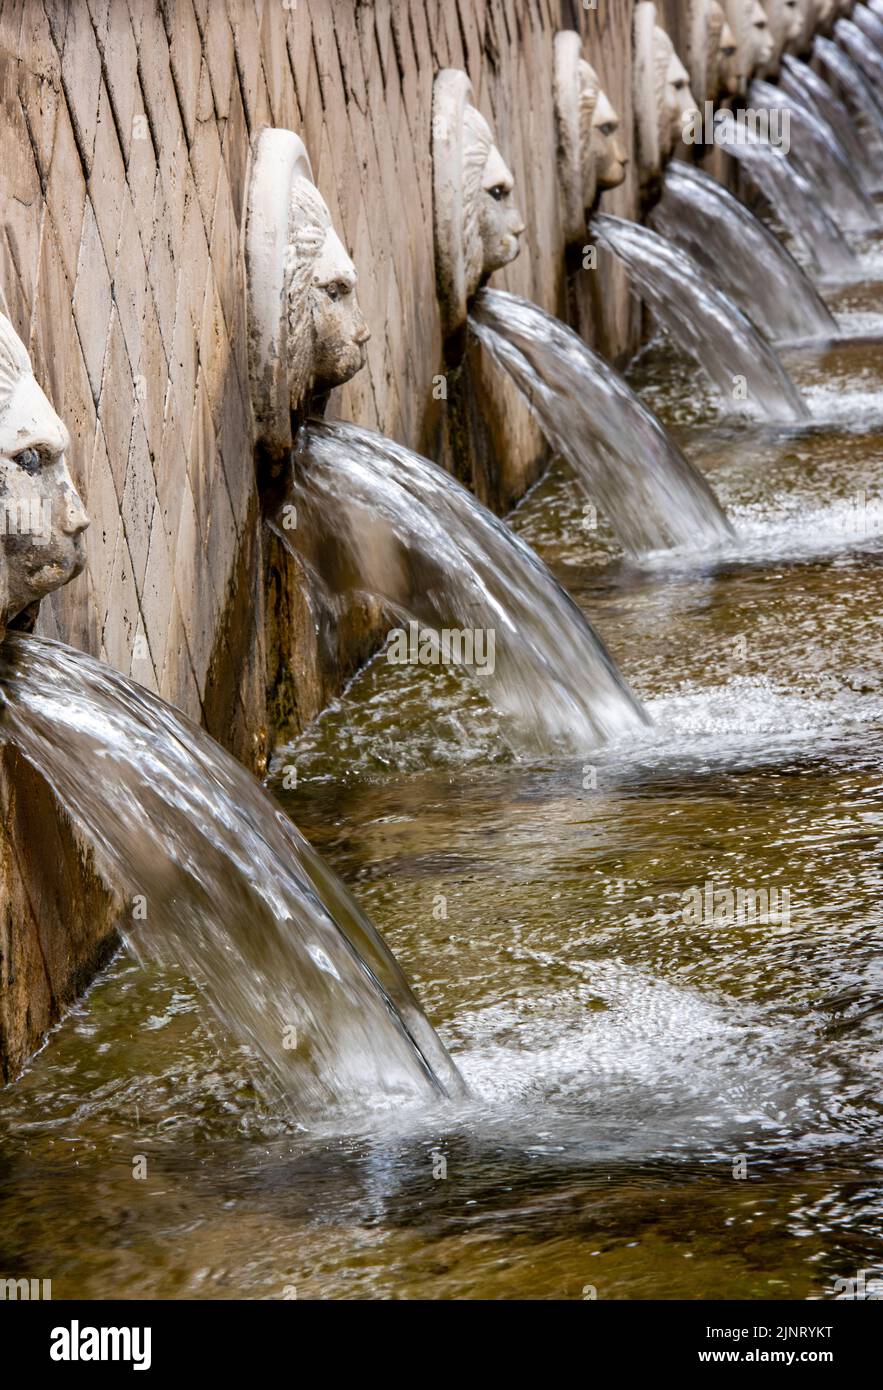 une rangée de fontaines à eau avec des têtes de masque de lion ordonnant de l'eau dans un bain de ville spa ou une gouttière pour repomper à travers la fontaine comme un élément de jardin Banque D'Images